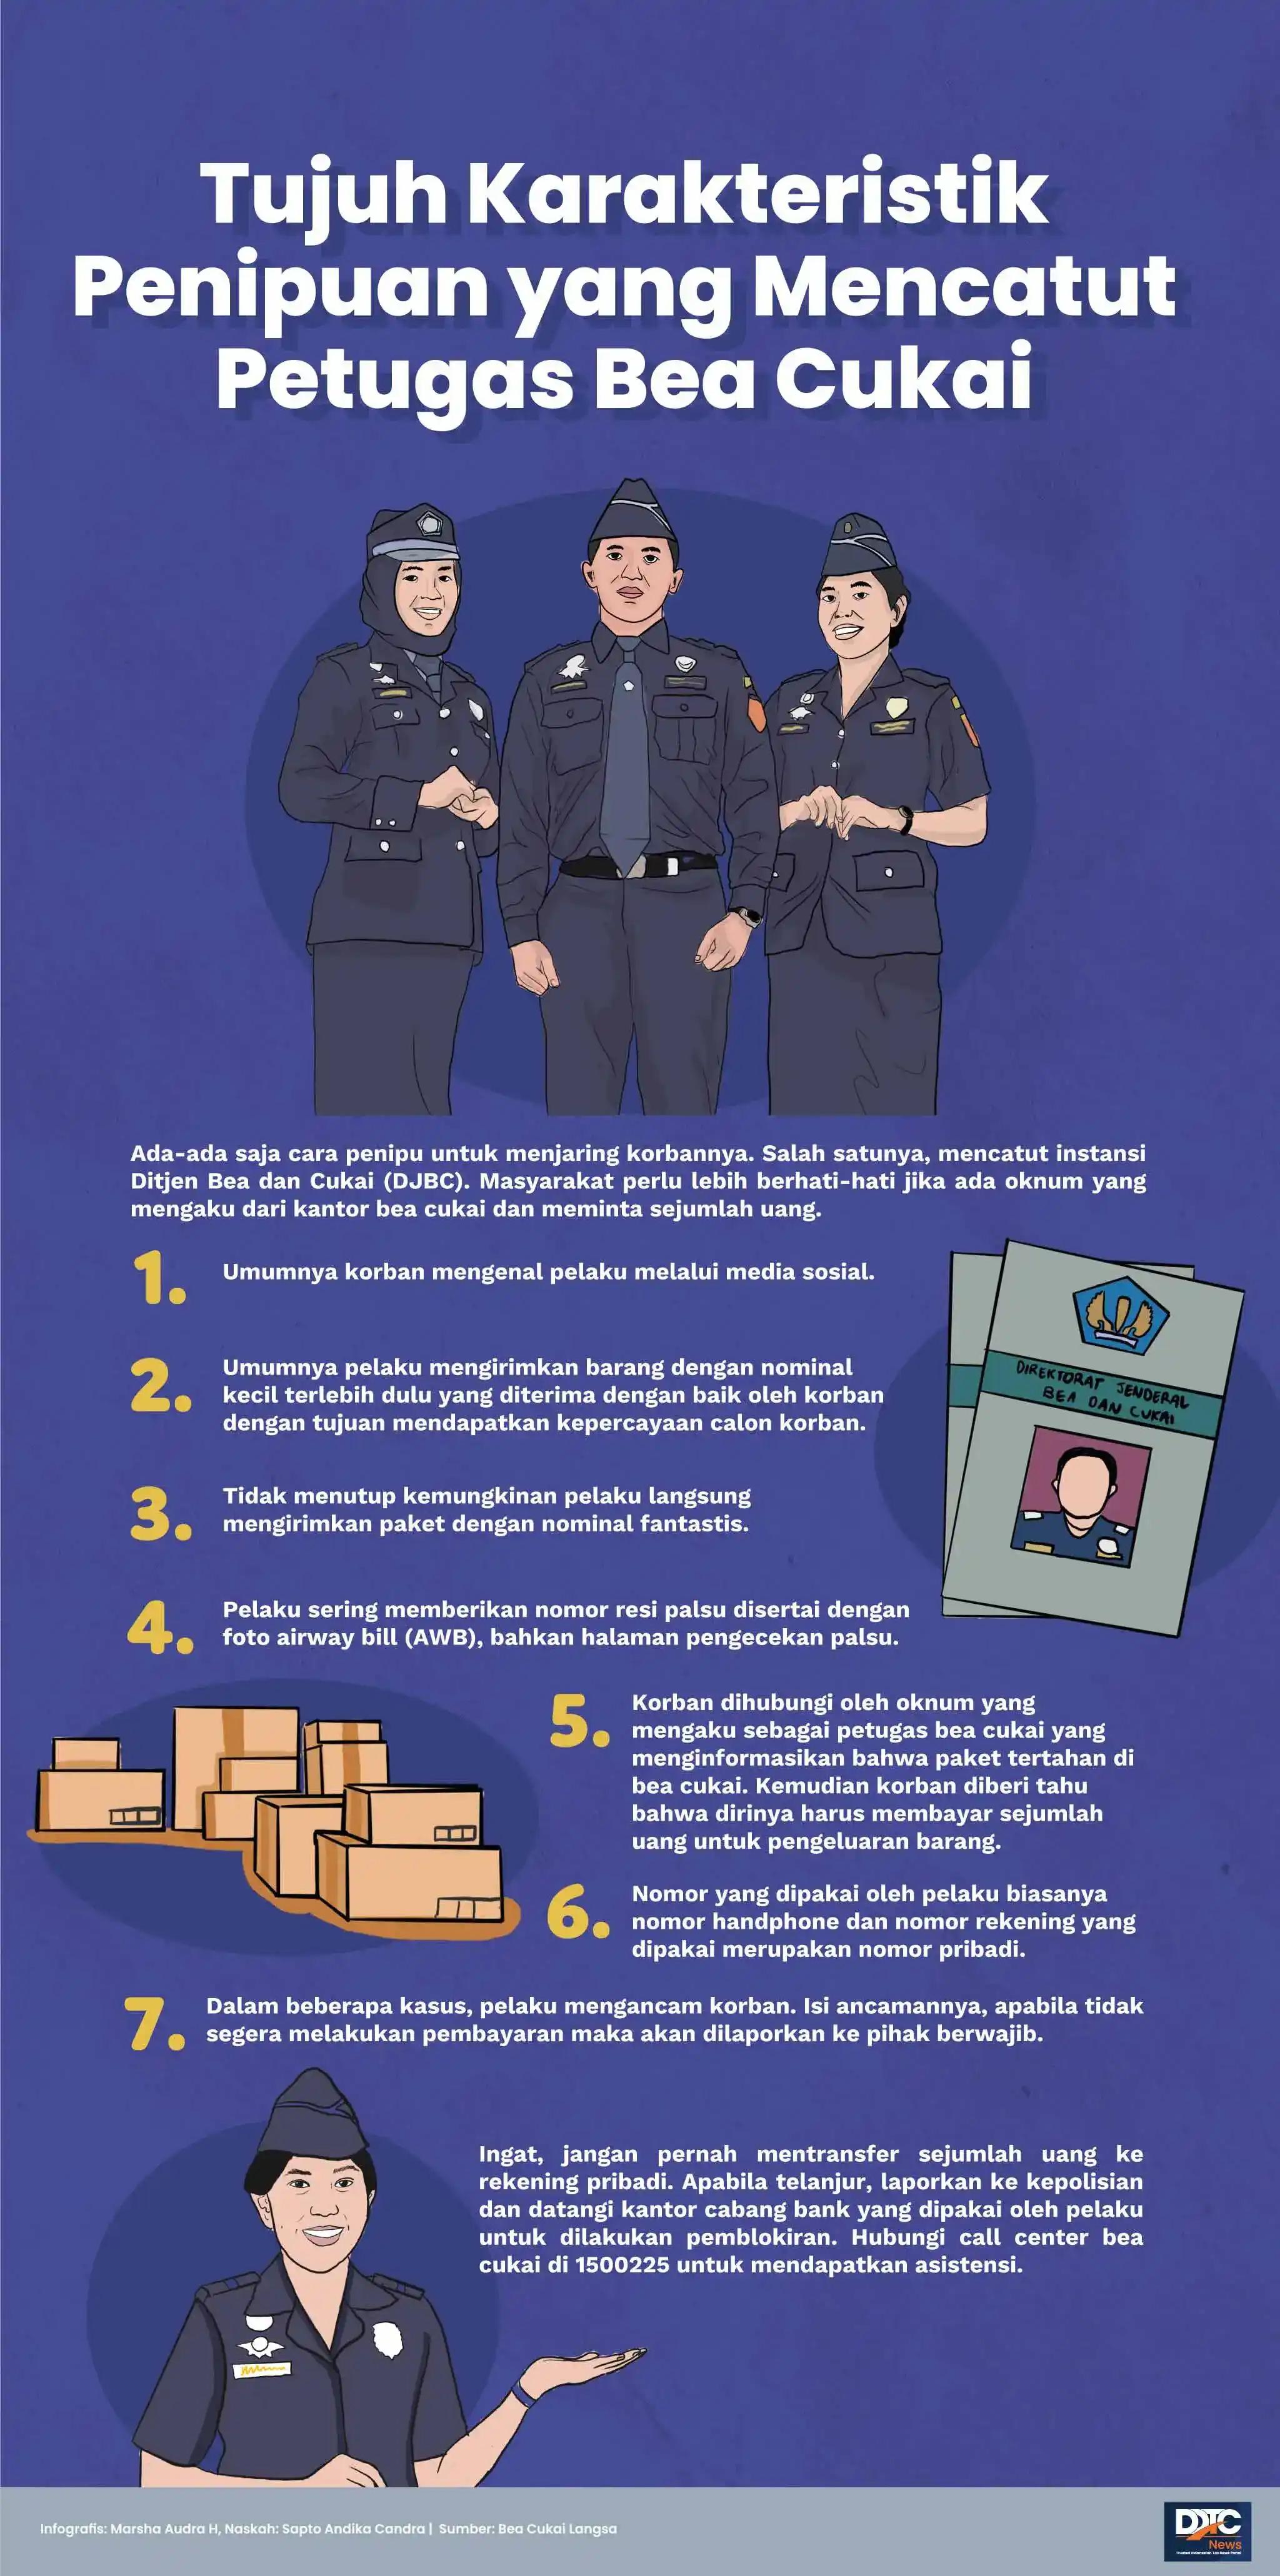 Tujuh Karakteristik Penipuan yang Mencatut Petugas Bea Cukai